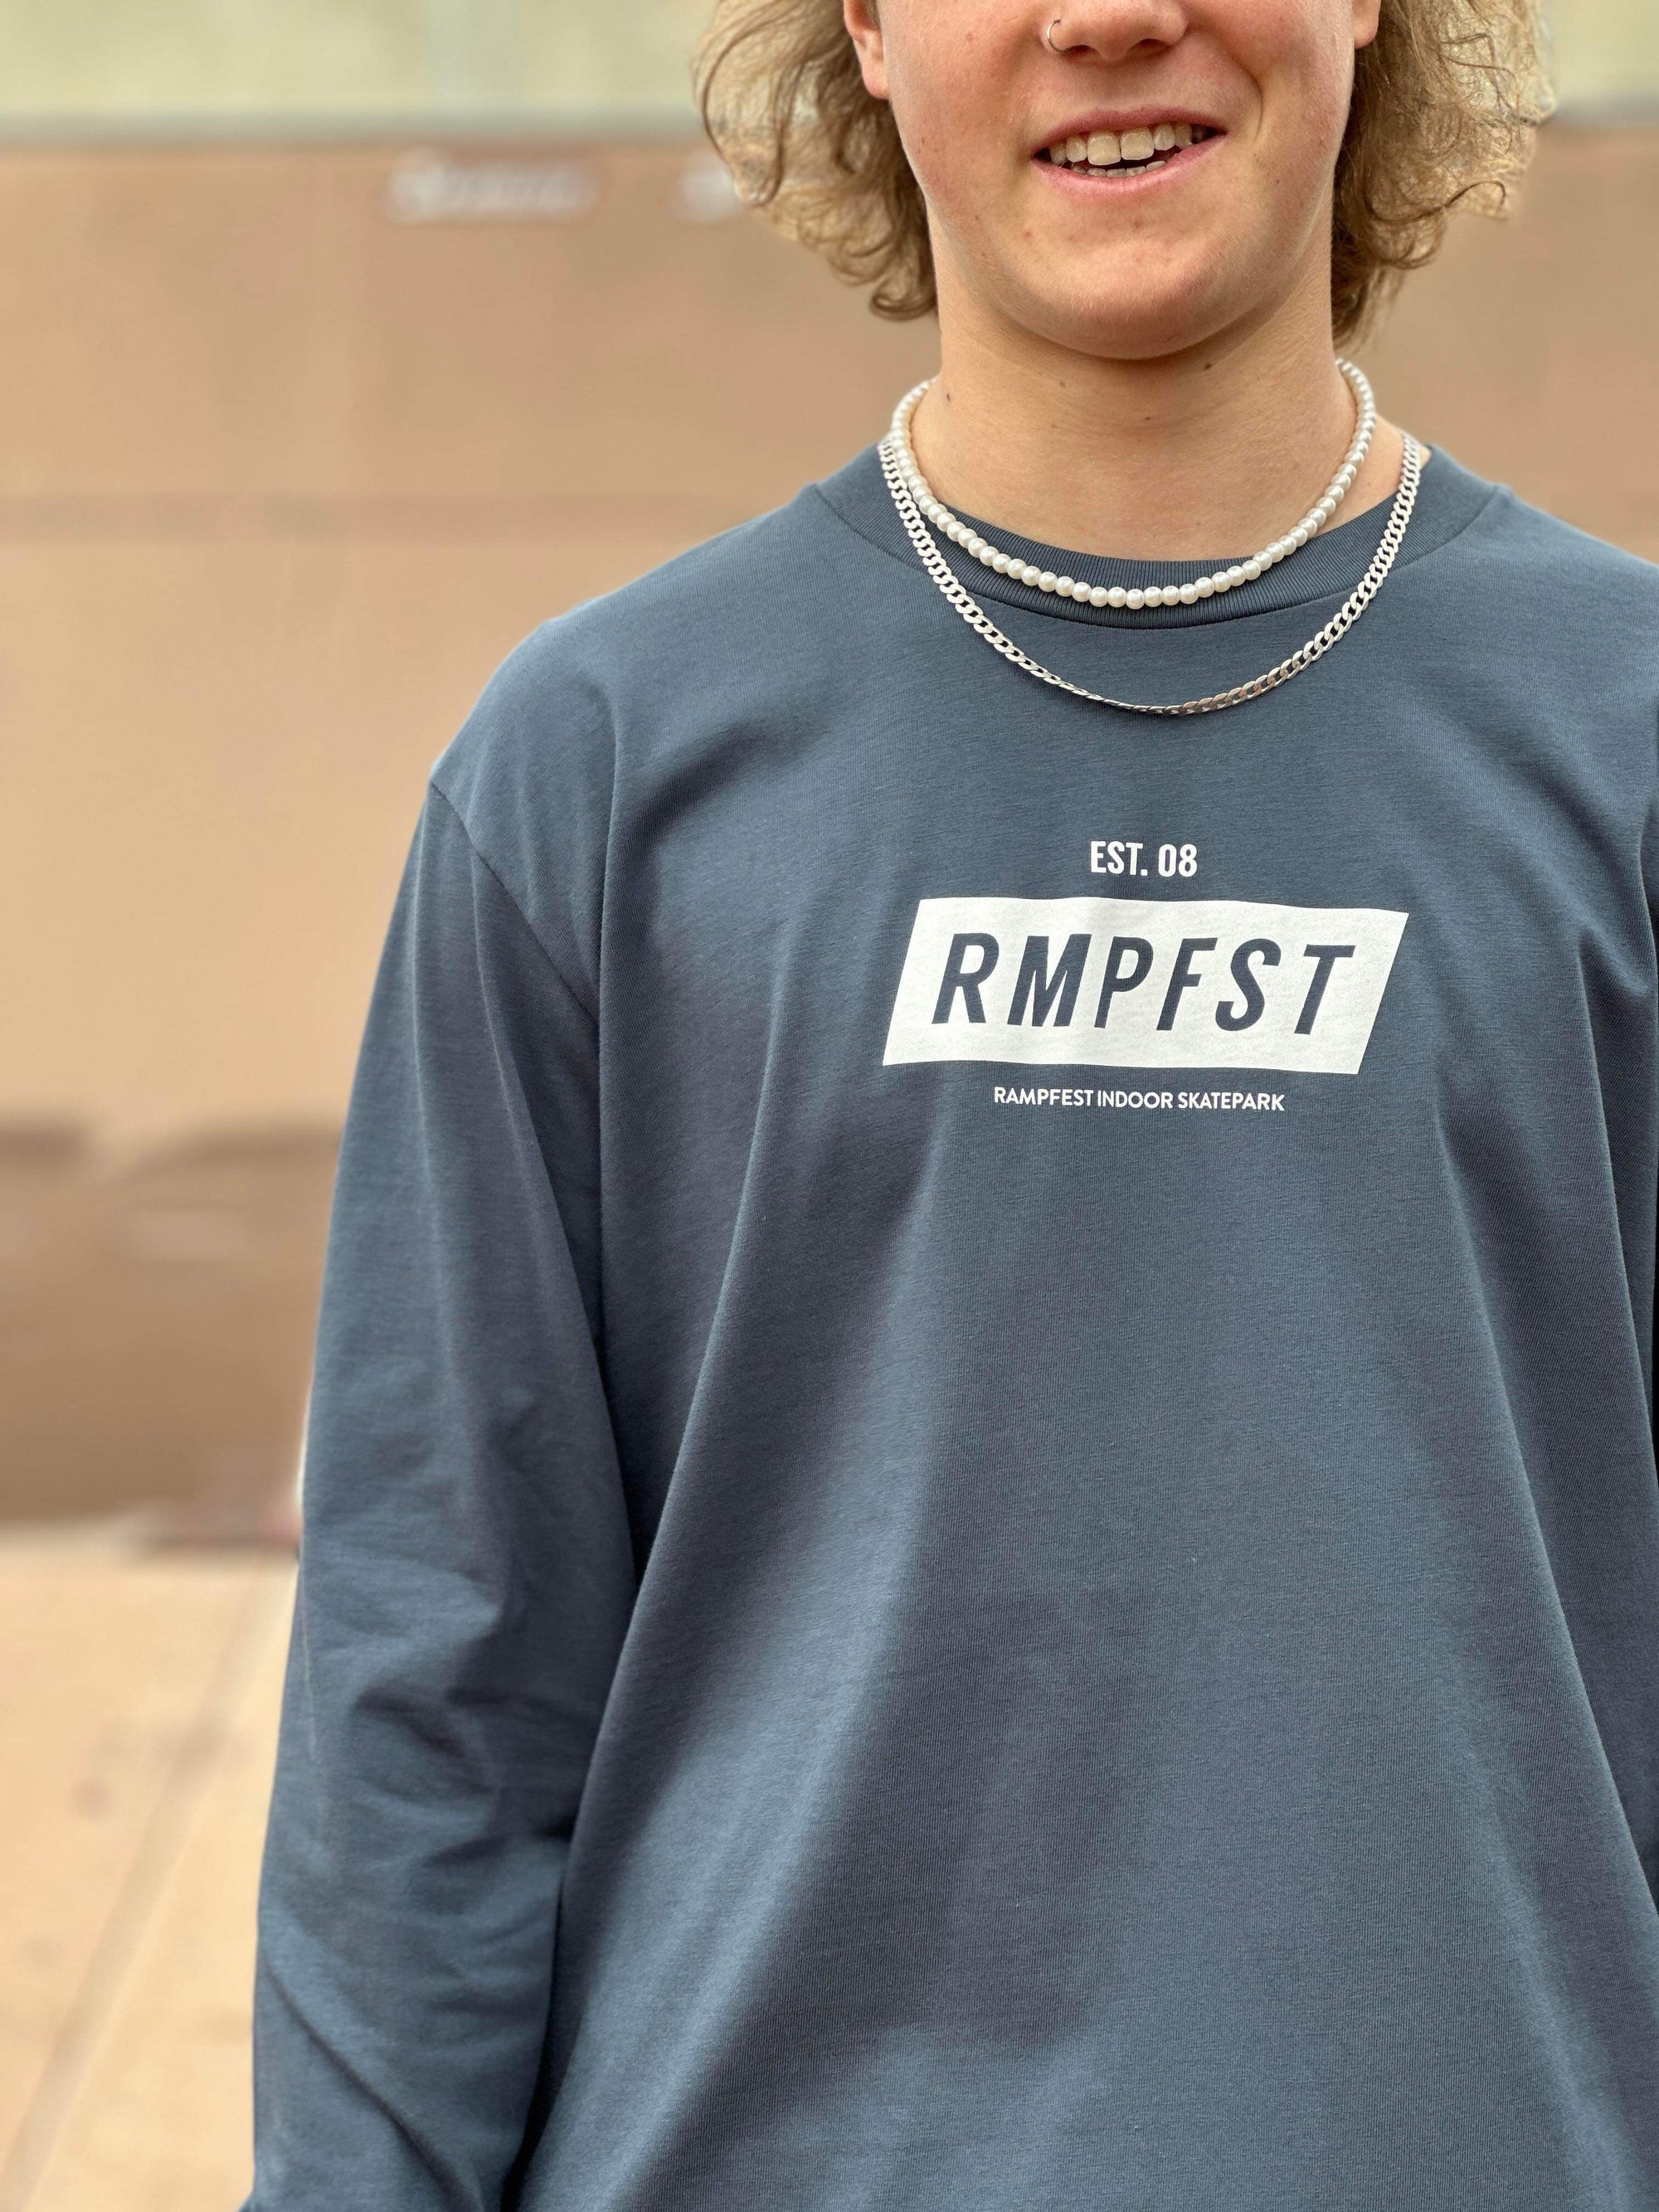 RampFest "RMPFST" Long-Sleeve Tee Shirt - Petrol Blue